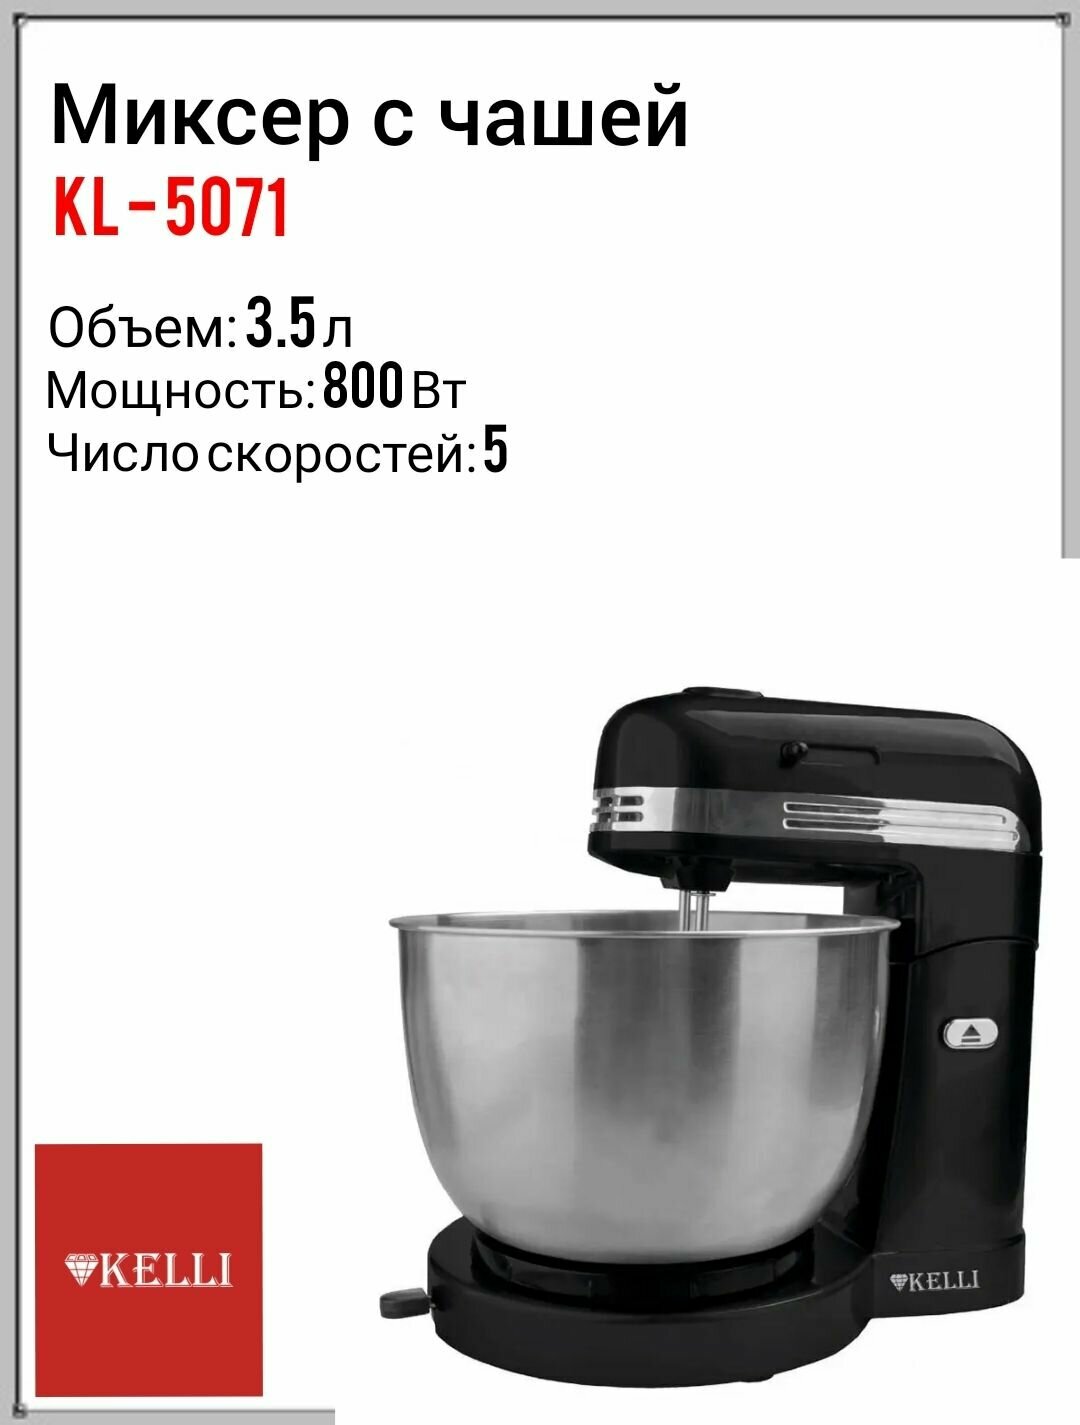 Миксер K-5071 c чашей черный, миксер ручной, помощник на кухне, миксер с чашей, миксер, бытовая техника.